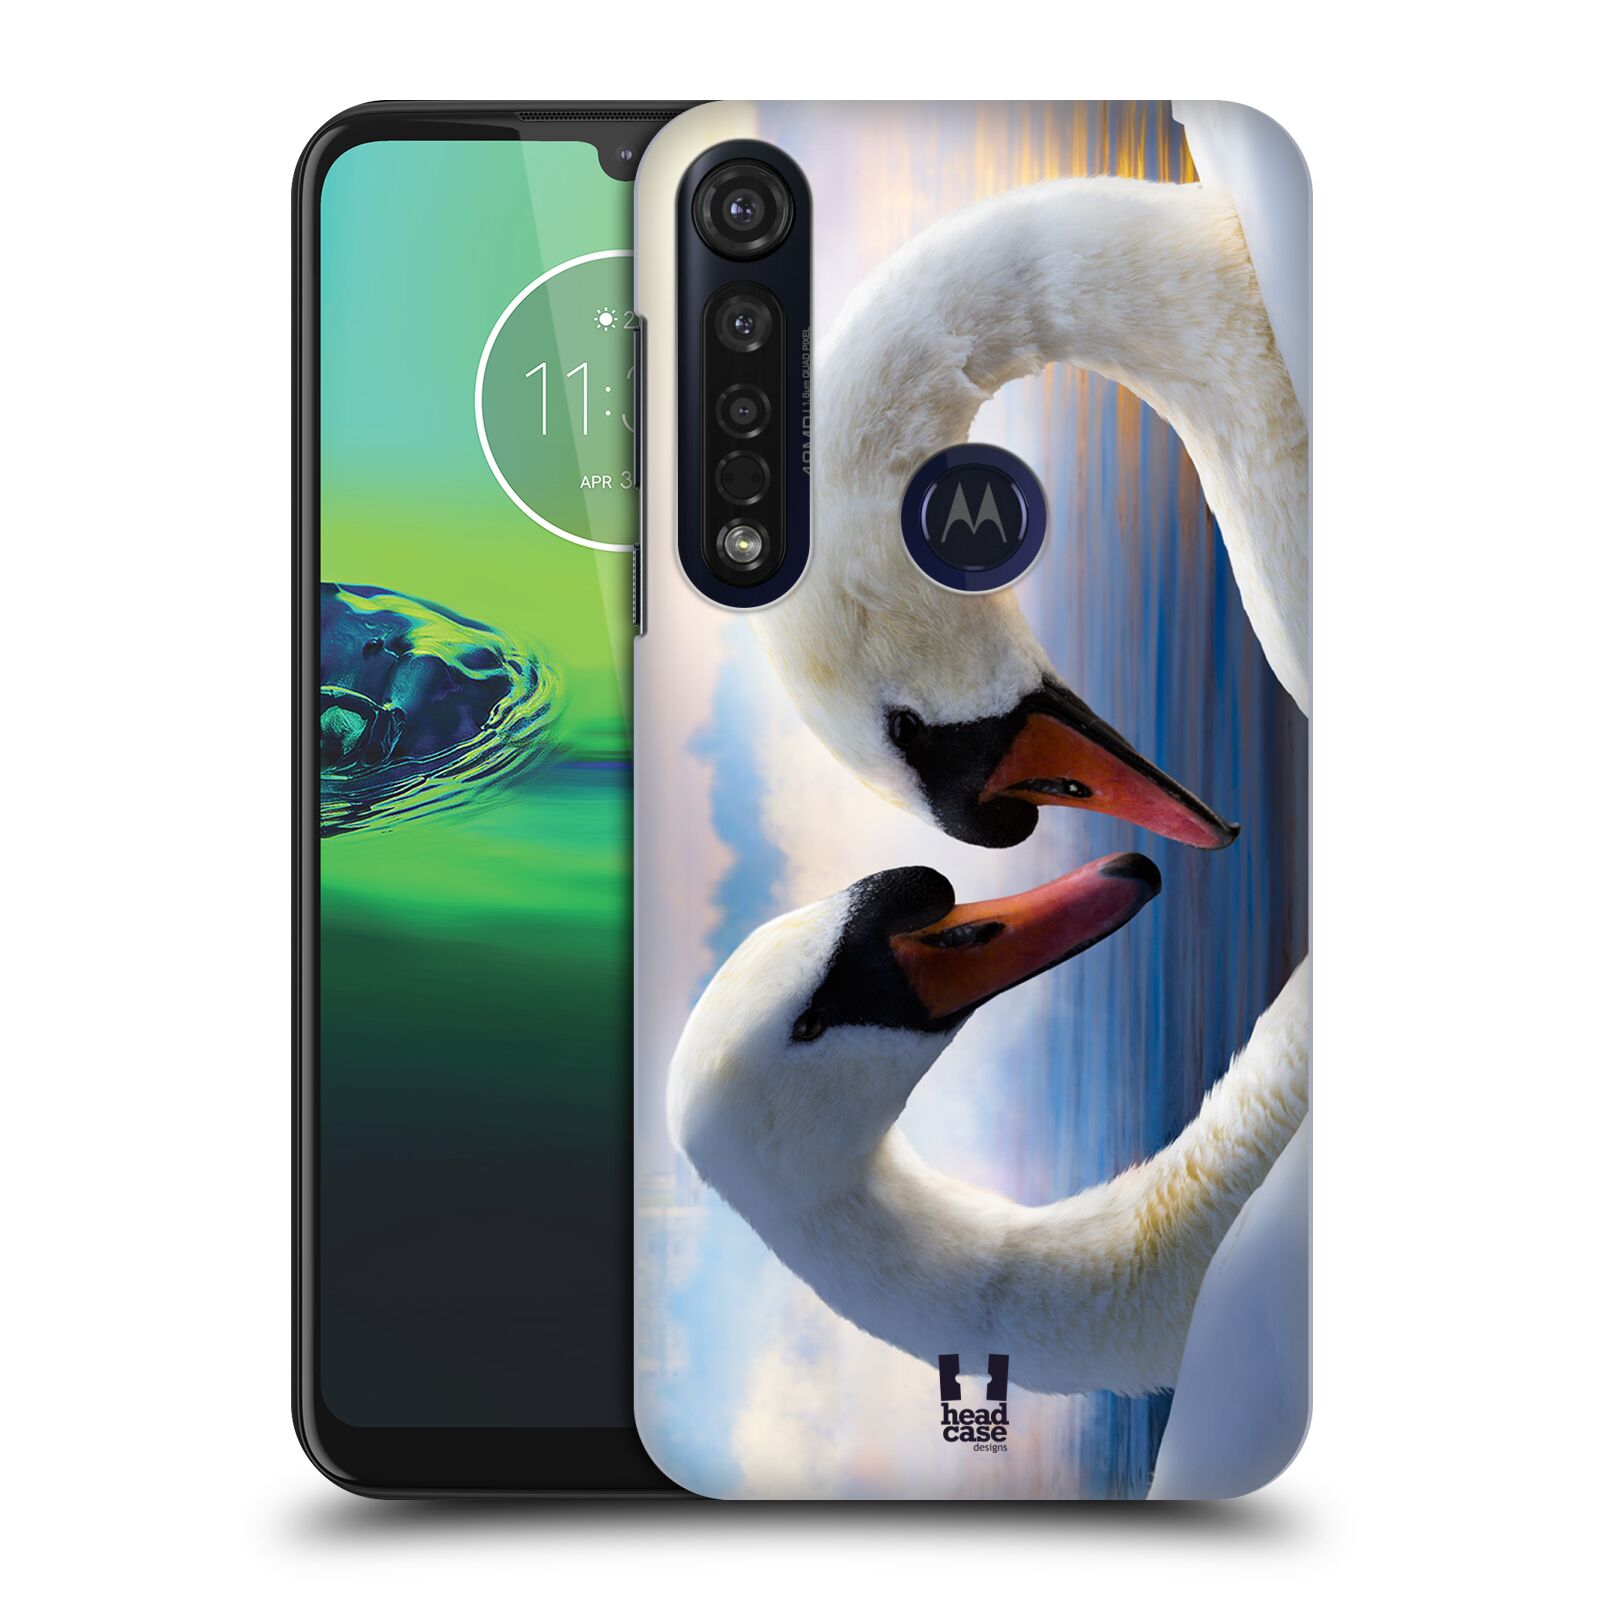 Pouzdro na mobil Motorola Moto G8 PLUS - HEAD CASE - vzor Divočina, Divoký život a zvířata foto ZAMILOVANÉ LABUTĚ, LÁSKA